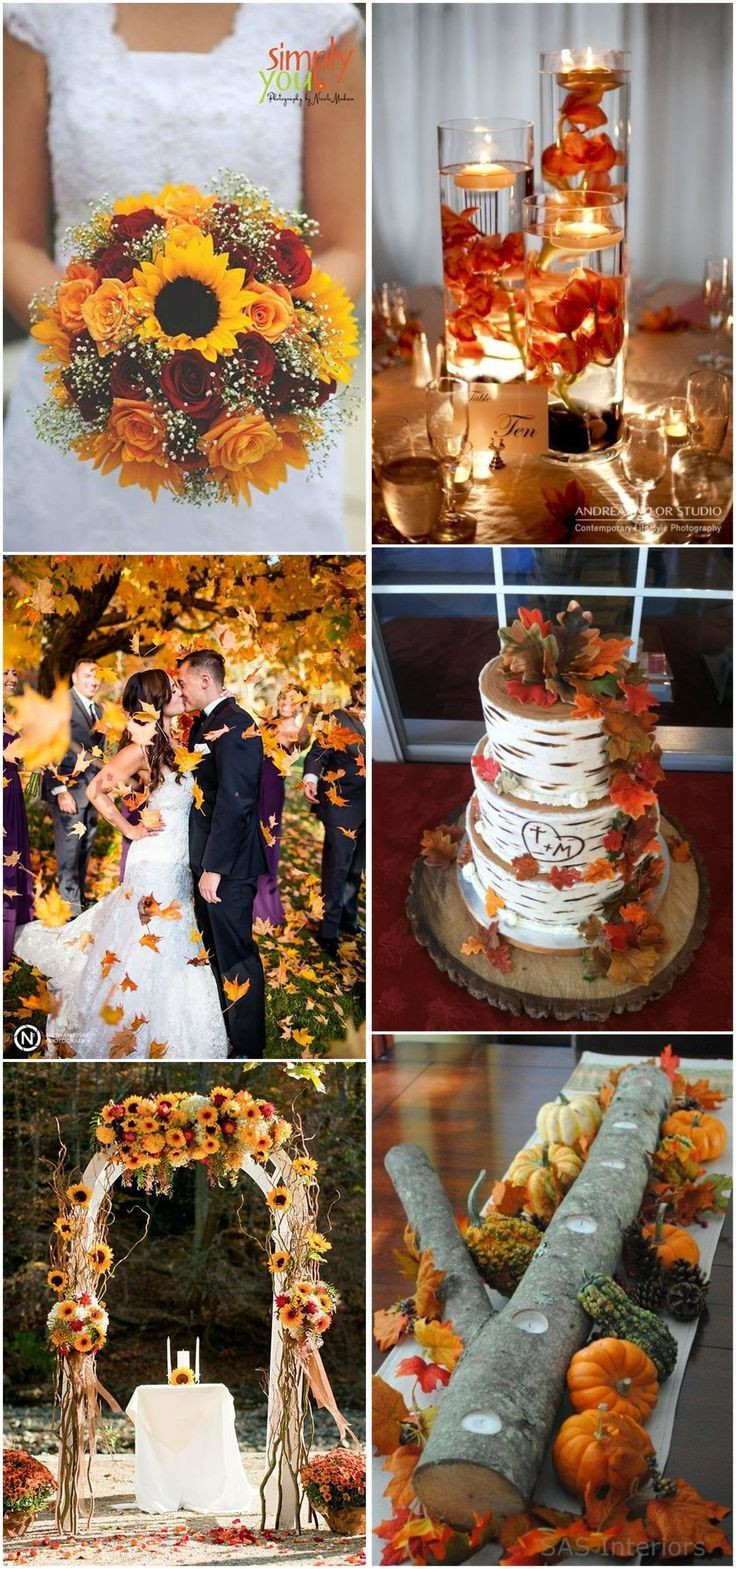 Wedding Themes Ideas For Fall
 23 Best Fall Wedding Ideas in 2019